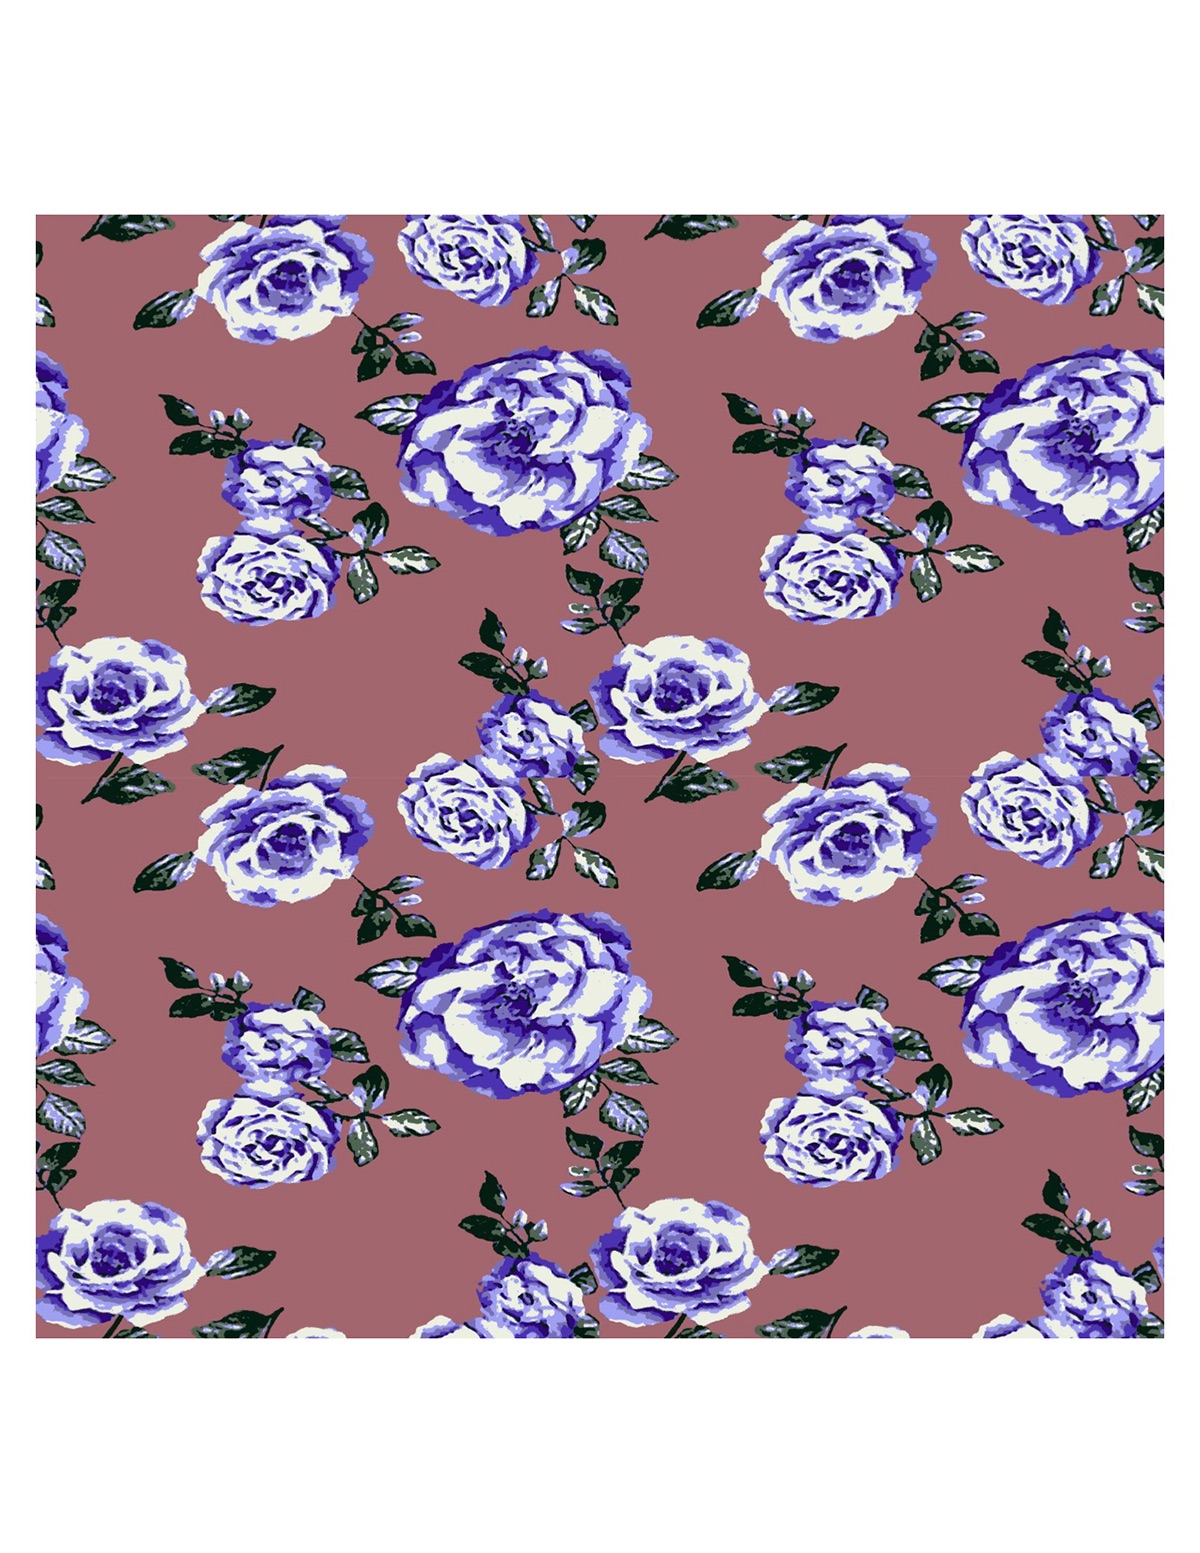 Textiles textile design  Fashion  florals flower apparel prints Nature Roses